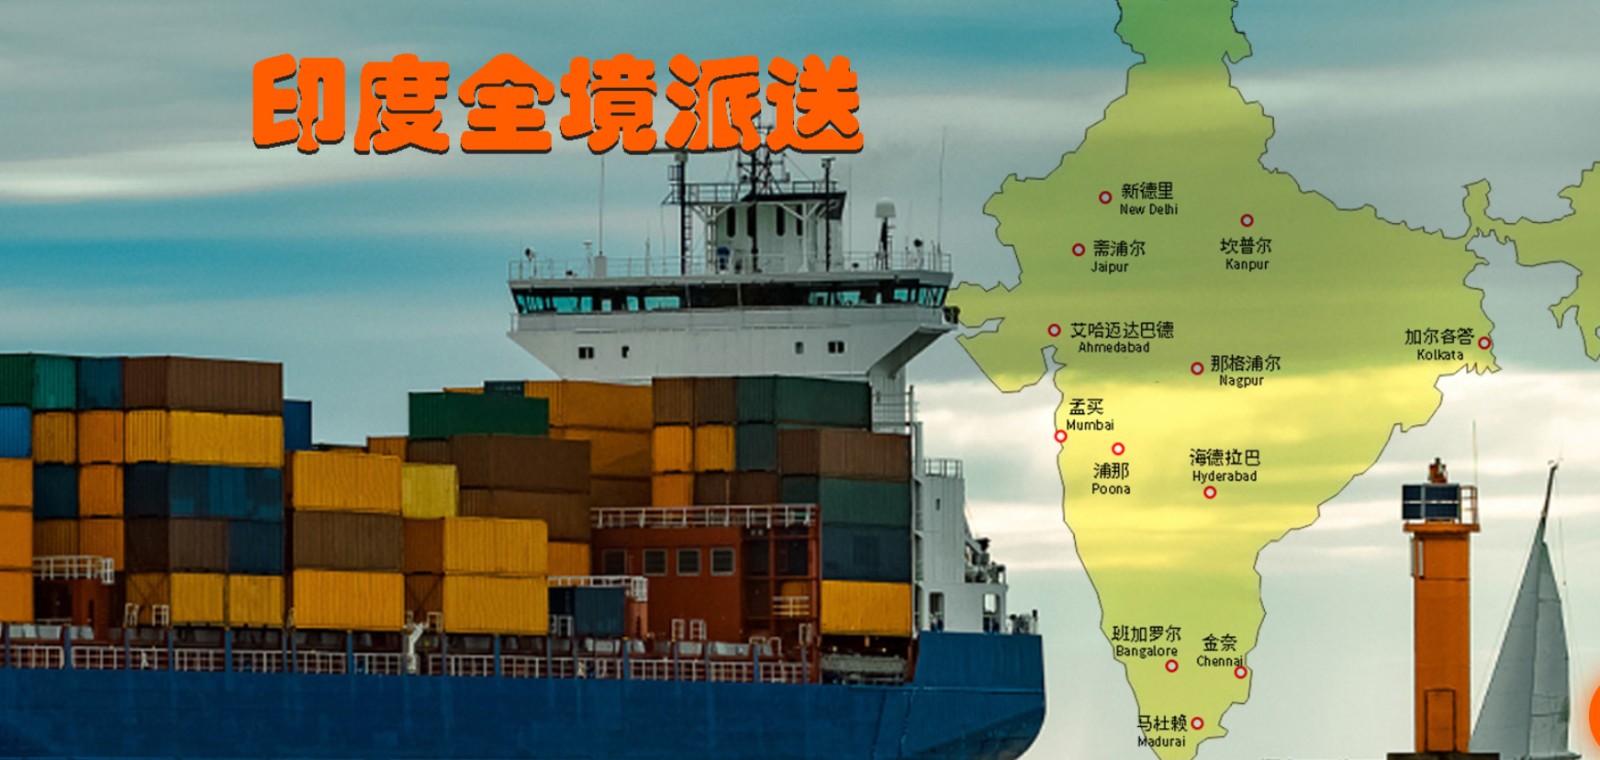 印度拼箱价格 印度海运代理 印度散货拼箱价格 印度船期查询国际物流货运代理